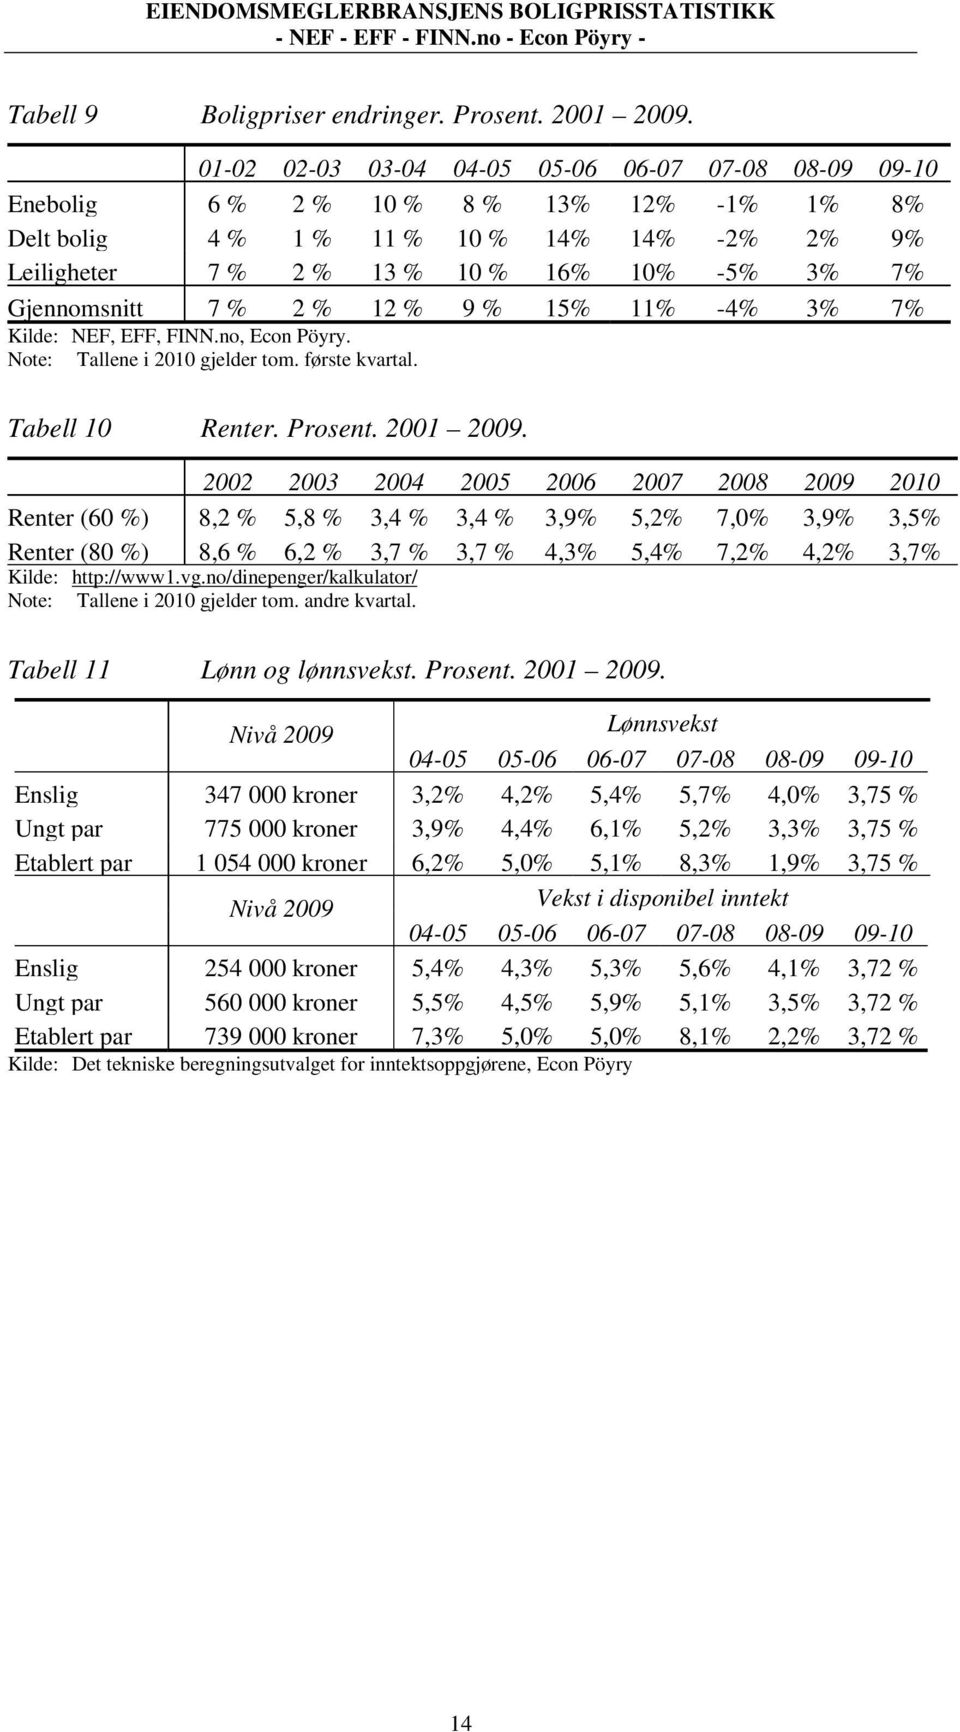 Gjennomsnitt 7 % 2 % 12 % 9 % 15% 11% -4% 3% 7% Kilde: NEF, EFF, FINN.no, Econ Pöyry. Note: Tallene i 2010 gjelder tom. første kvartal. Tabell 10 Renter. Prosent. 2001 2009.